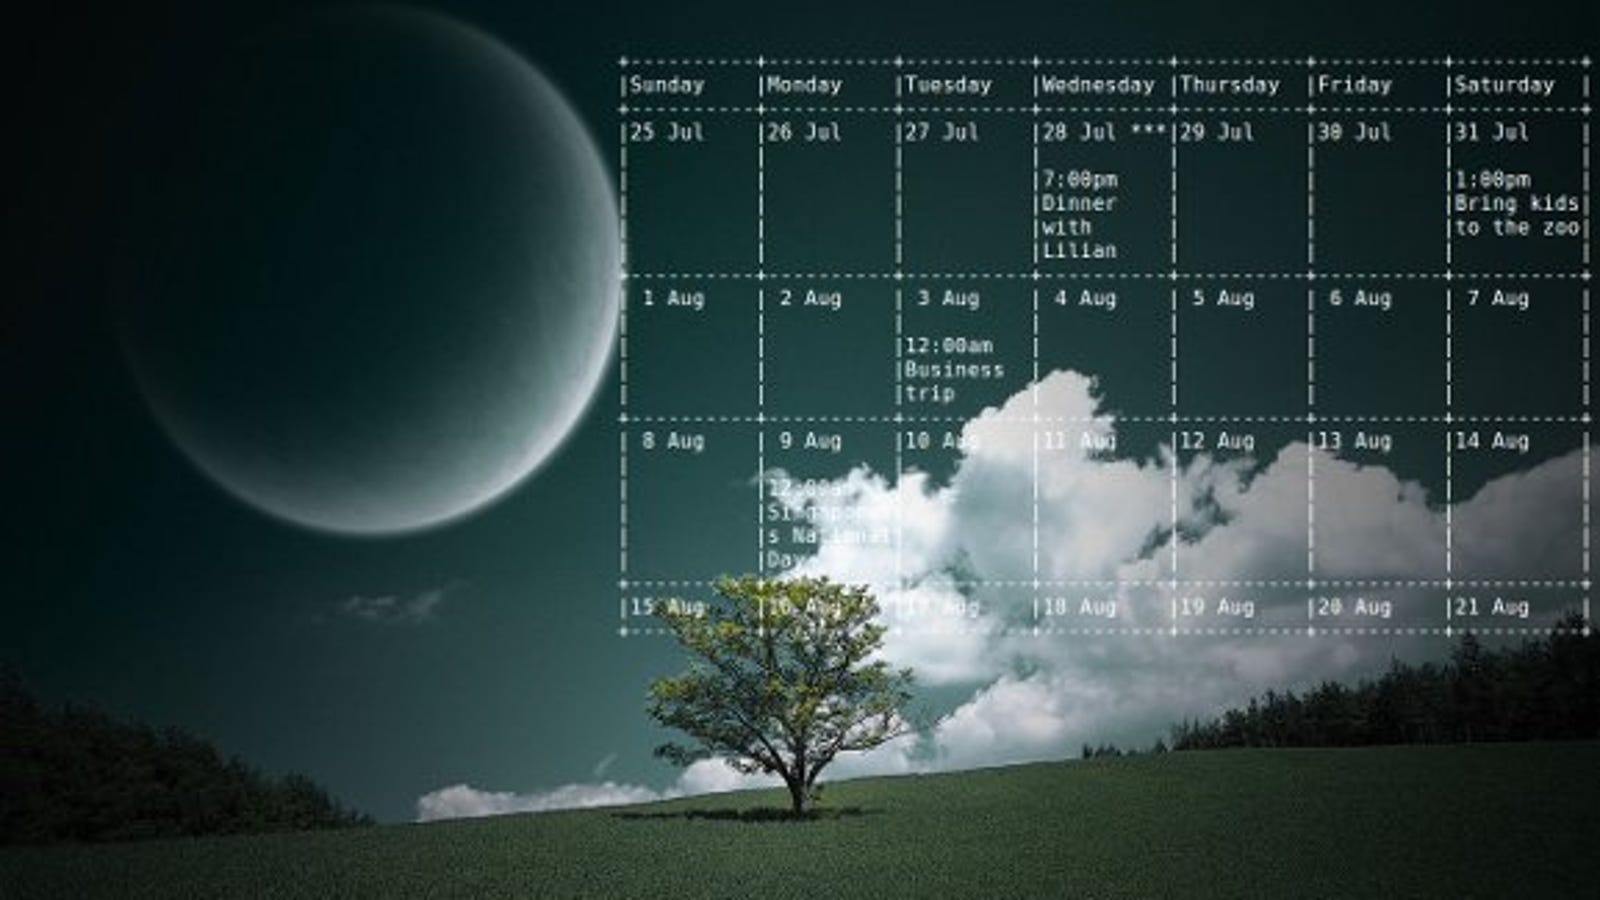 51 Top Photos Google Calendar Desktop App Linux - Google Calendar's update with Material Design is stunning ...